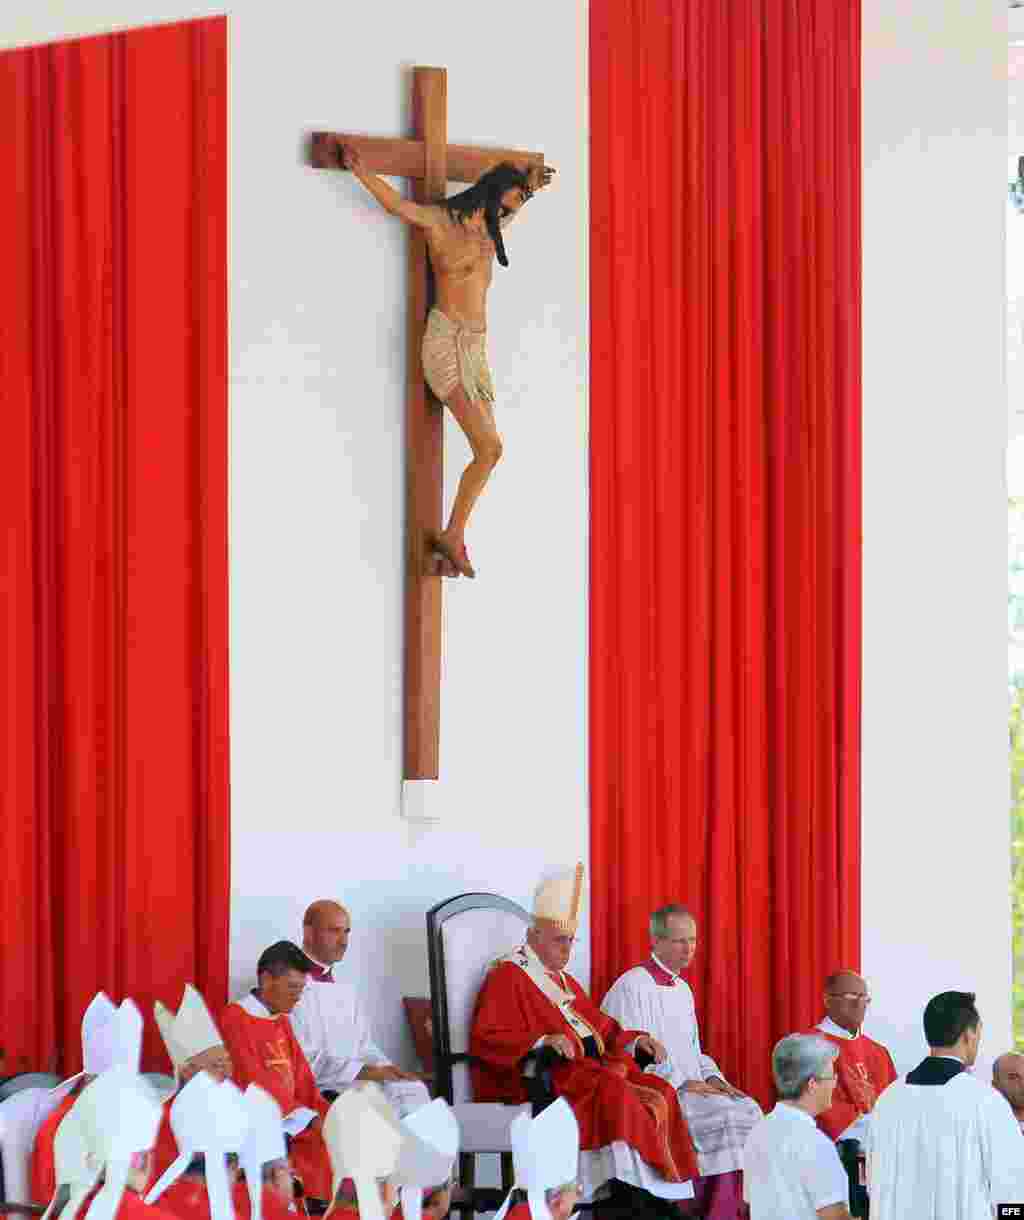  El papa Francisco oficia una misa desde la Plaza de la Revolución hoy, lunes 21 de septiembre de 2015, en Holguín (Cuba) como parte de su programa de actividades eclesiásticas en el marco de su visita. 